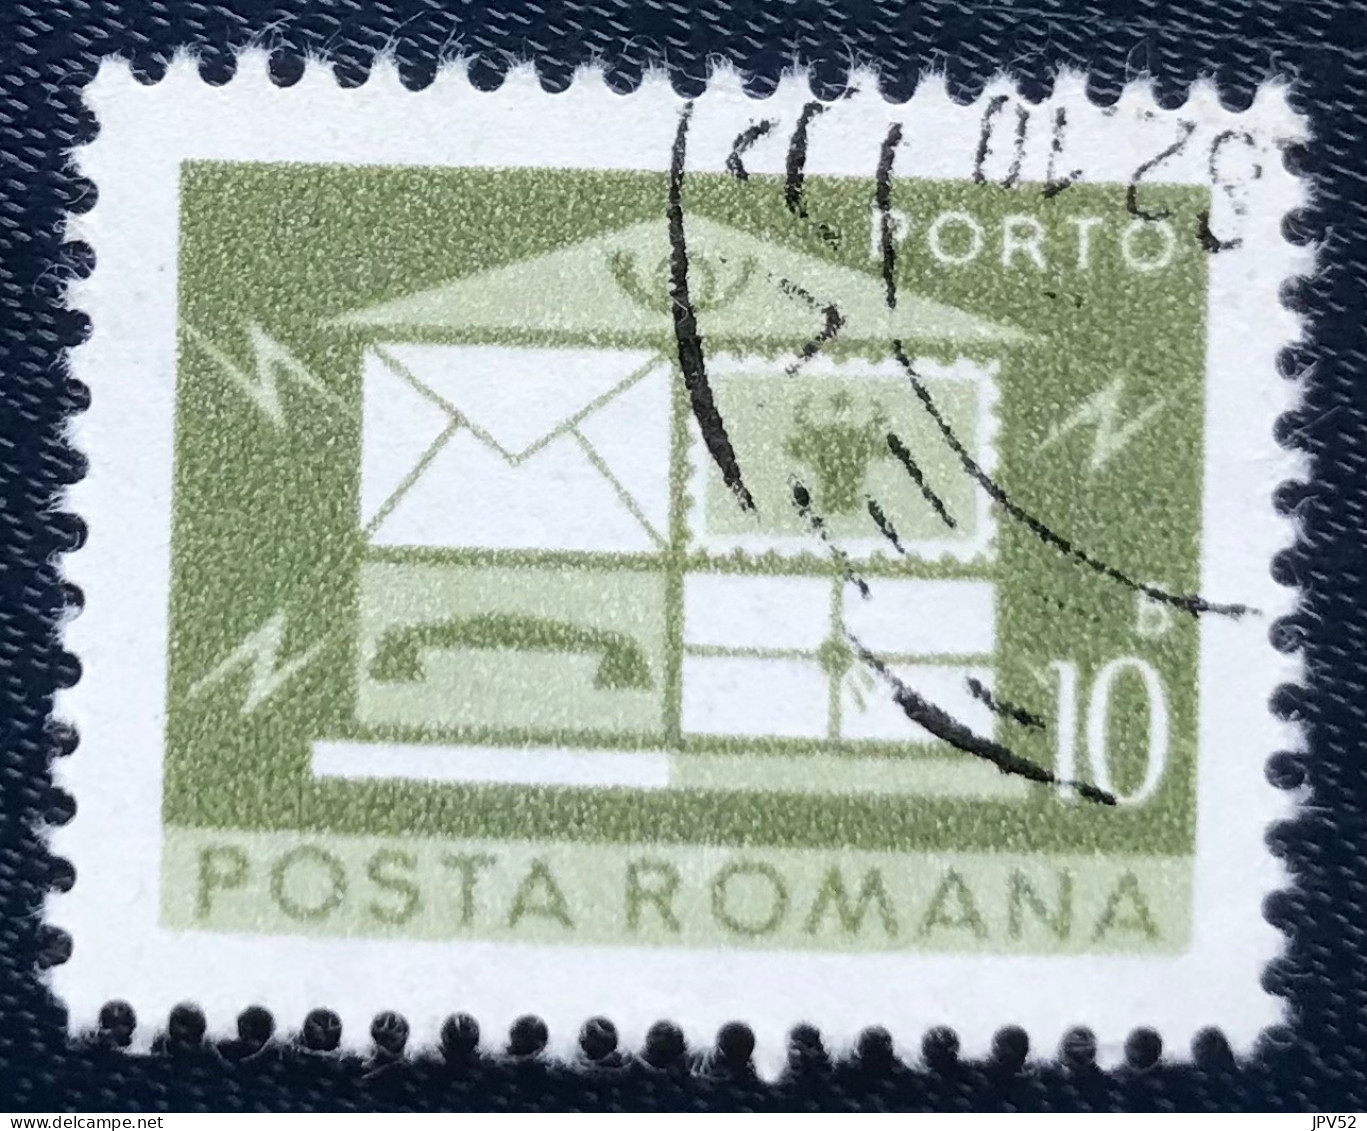 Romana - Roemenië - C14/54 - 1974 - (°)used - Michel 120 - Brievenbus - Strafport